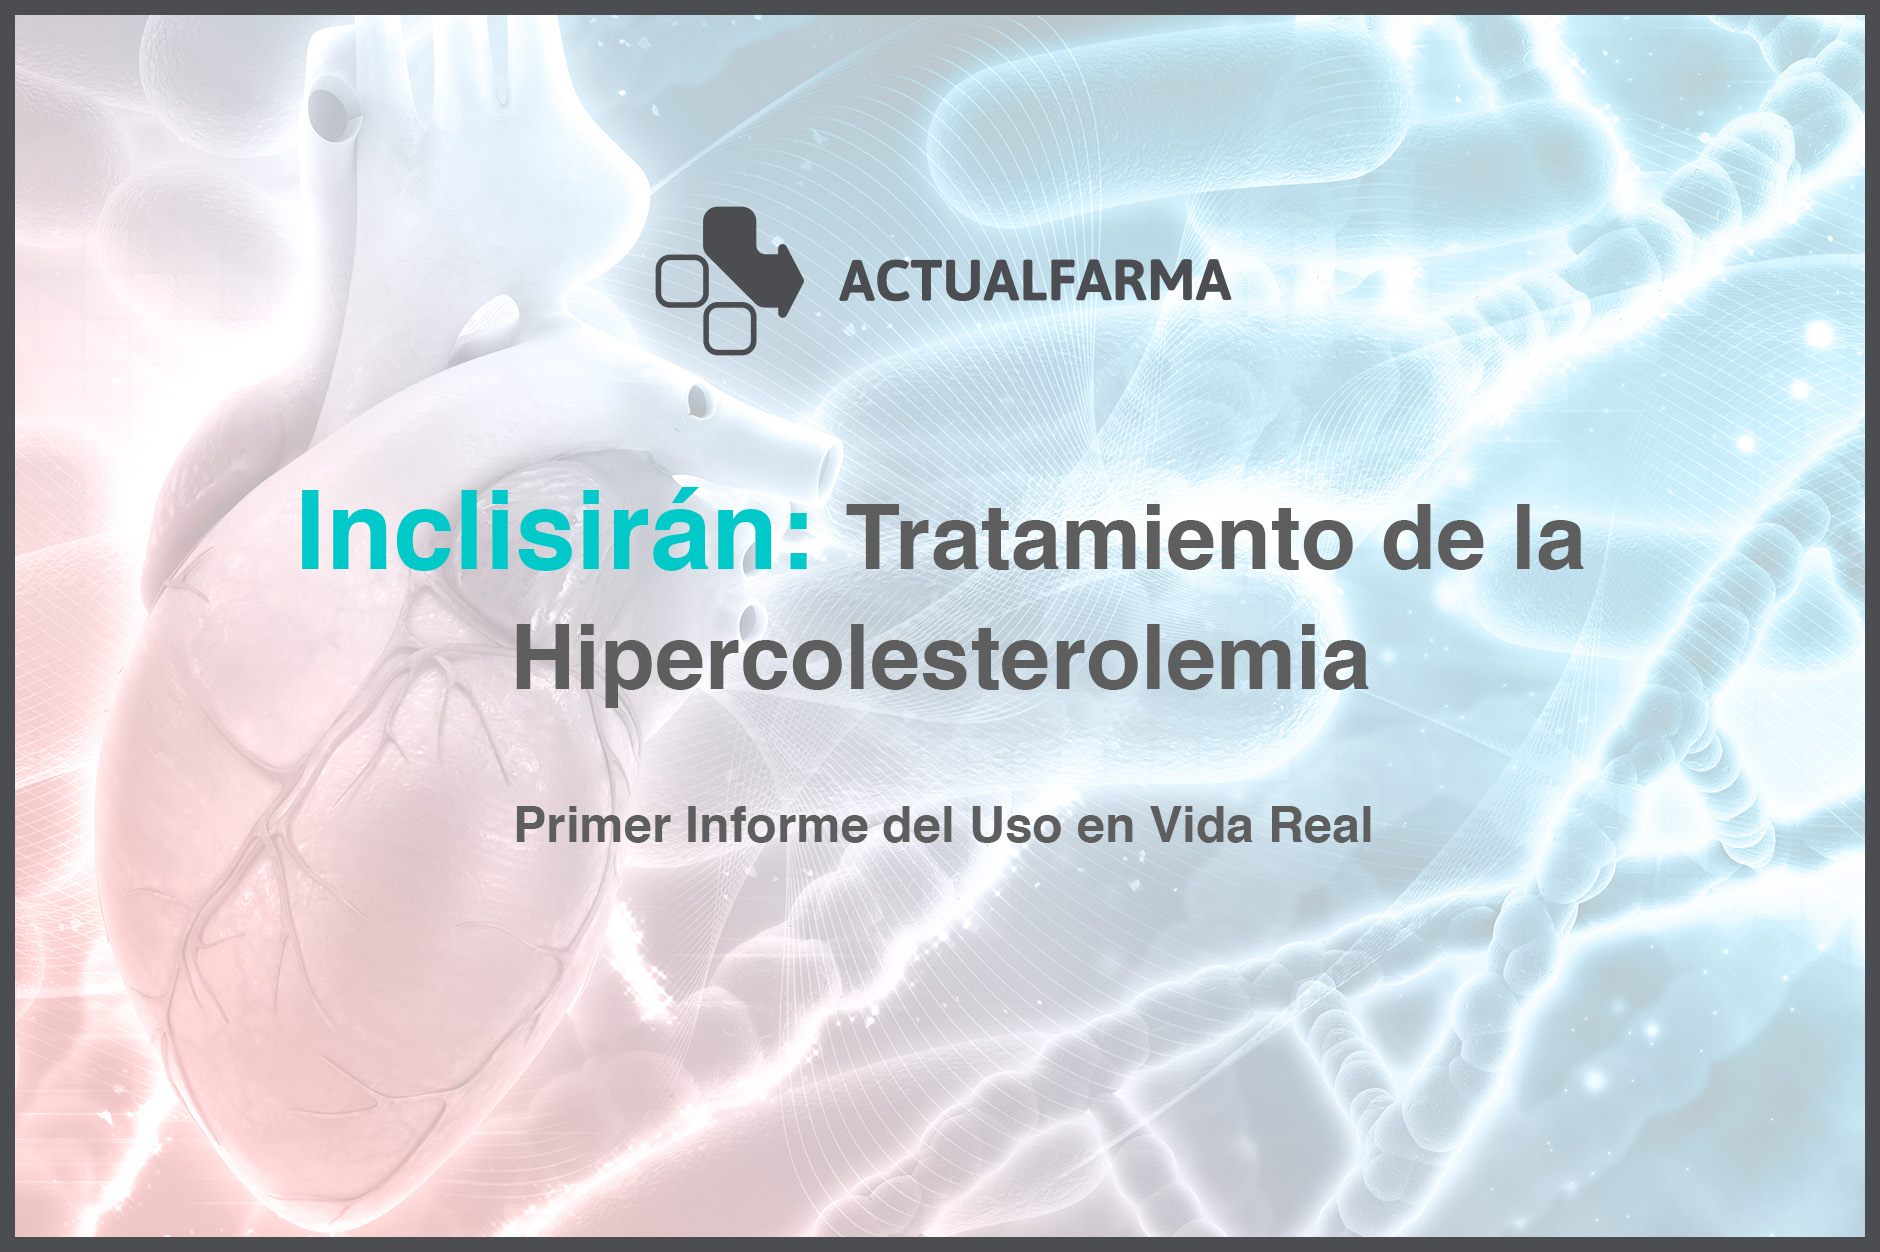 Primer Informe del Uso en Vida Real de Inclisirán para el Tratamiento de la Hipercolesterolemia